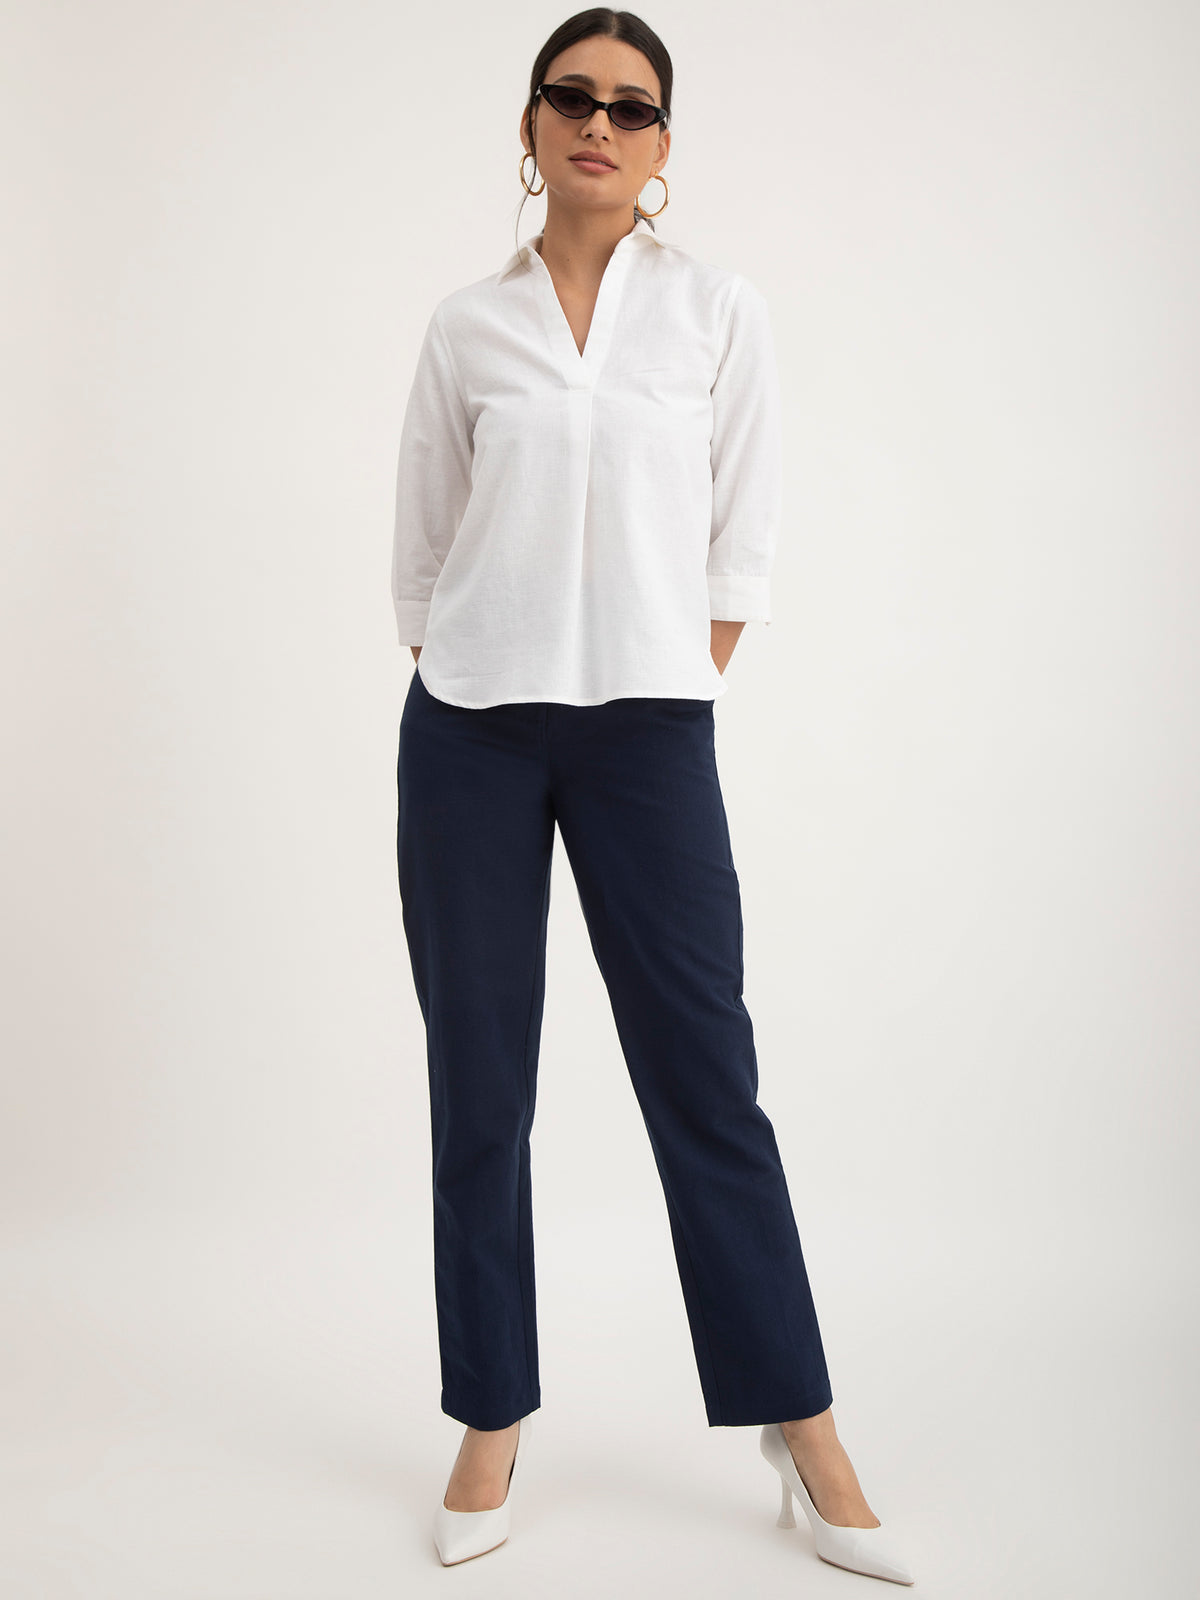 Linen Elasticated Straight Trouser - Navy Blue